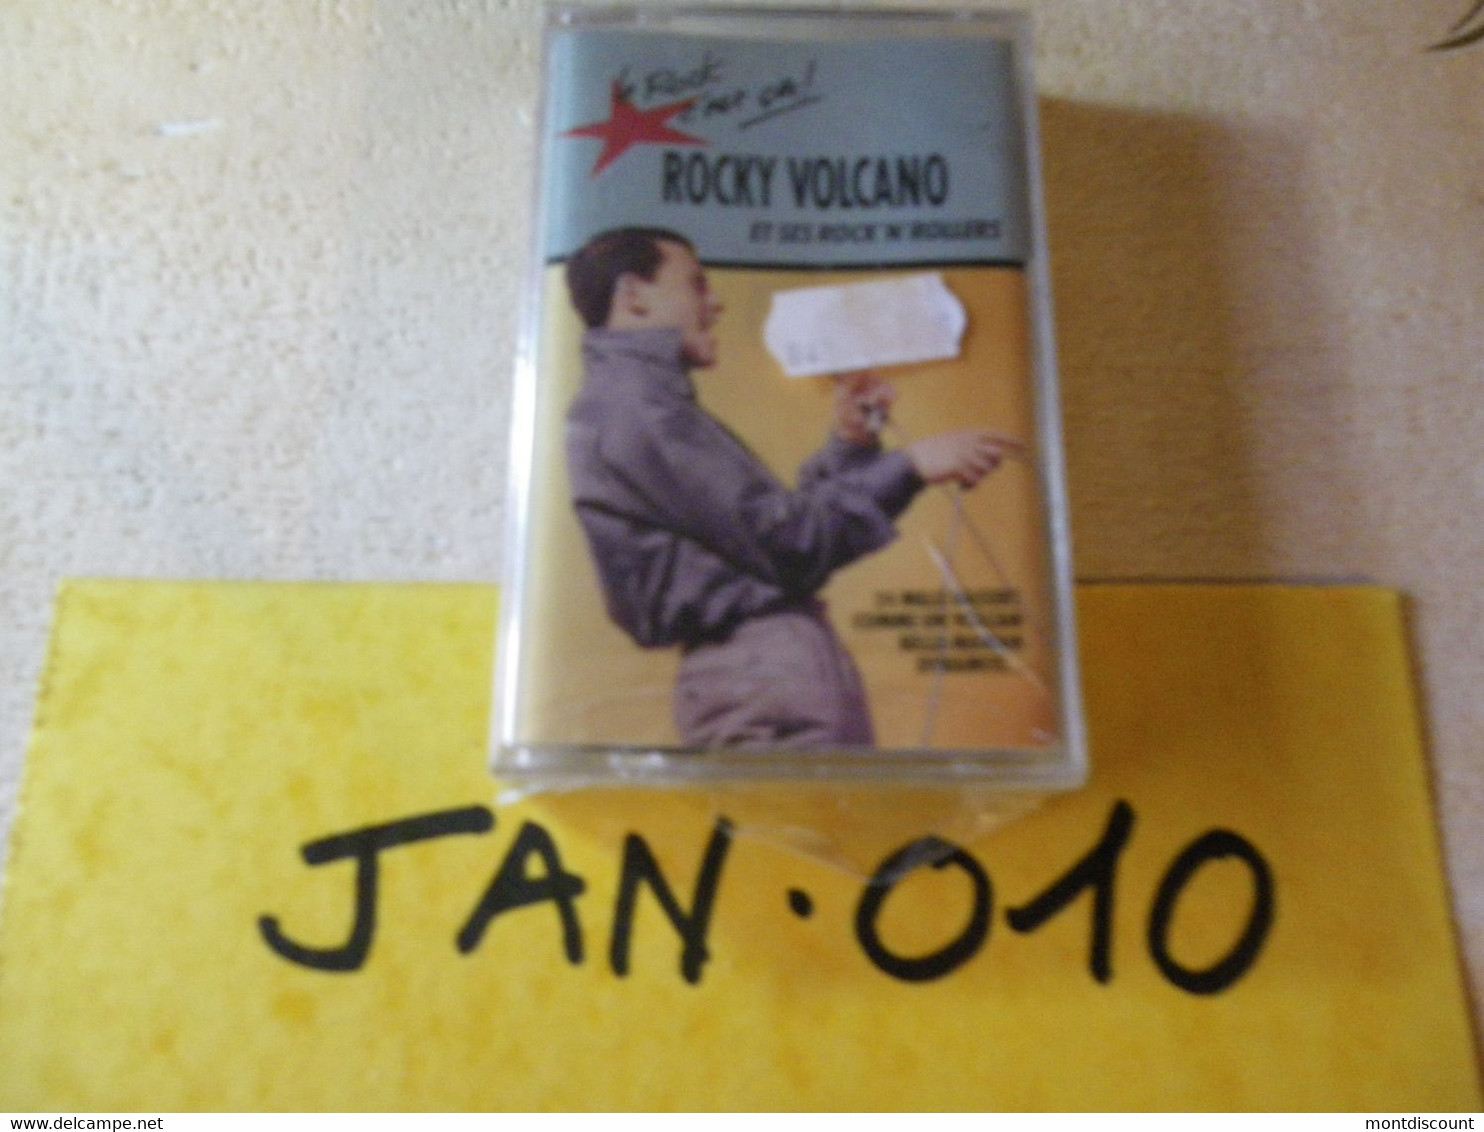 ROCKY VOLCANO K7 AUDIO EMBALLE D'ORIGINE JAMAIS SERVIE... VOIR PHOTO... (JAN 010) - Cassettes Audio